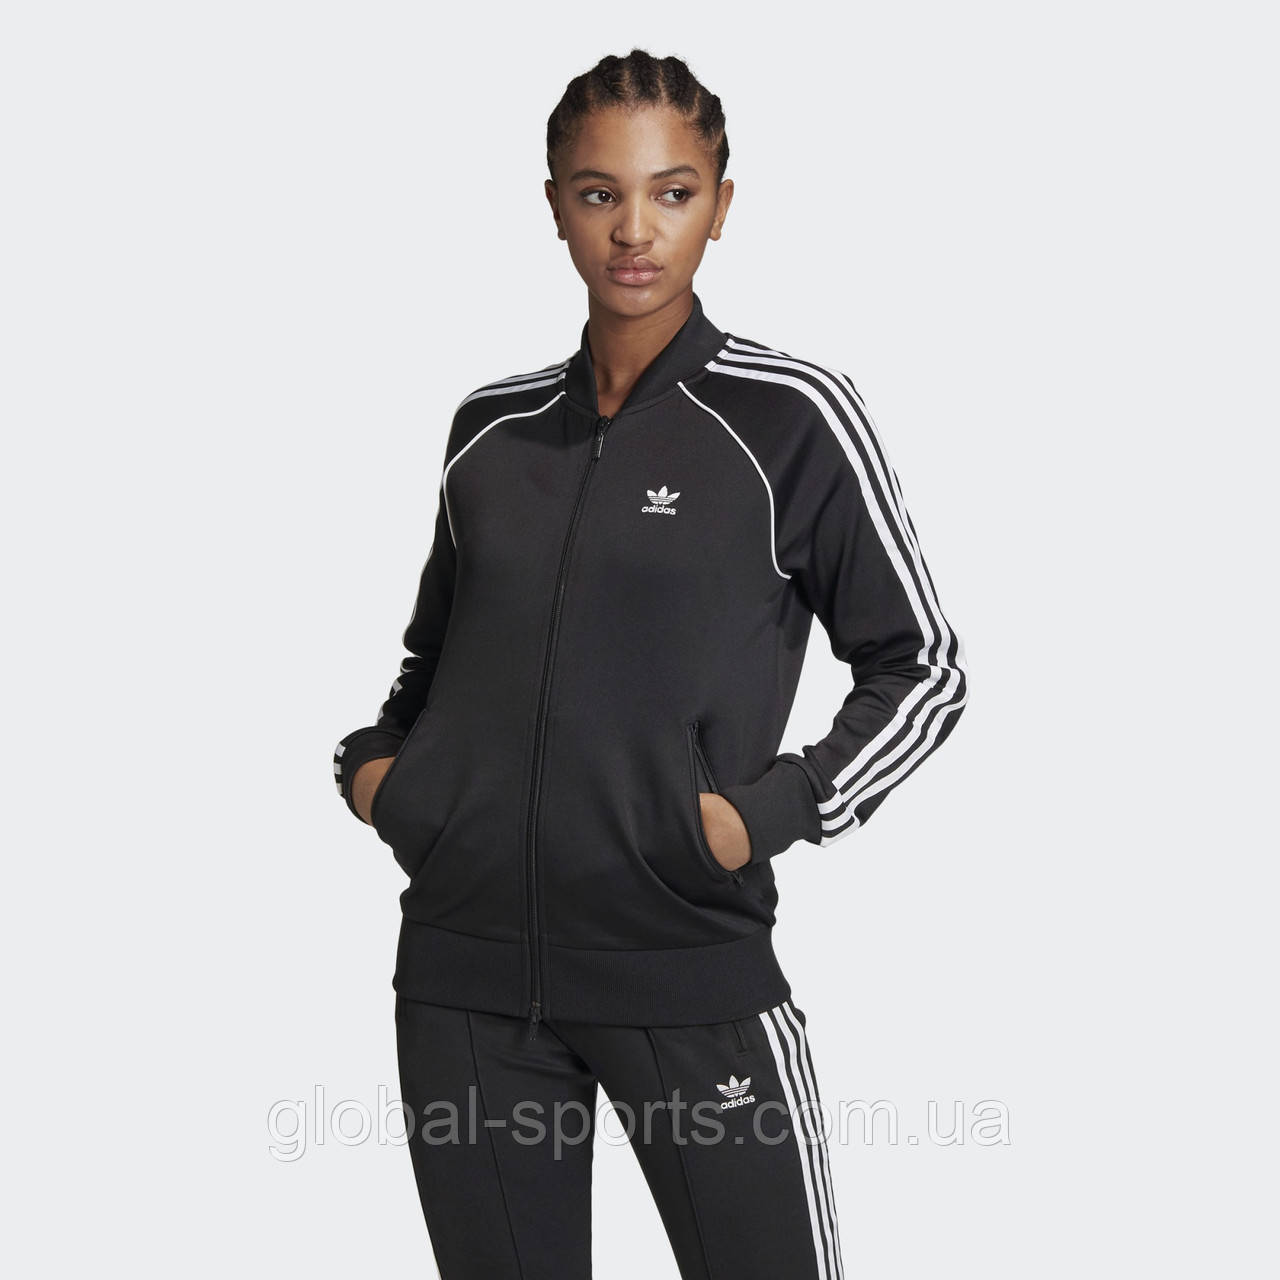 Жіноча олімпійка Adidas SST Primeblue W (Артикул:GD2374)